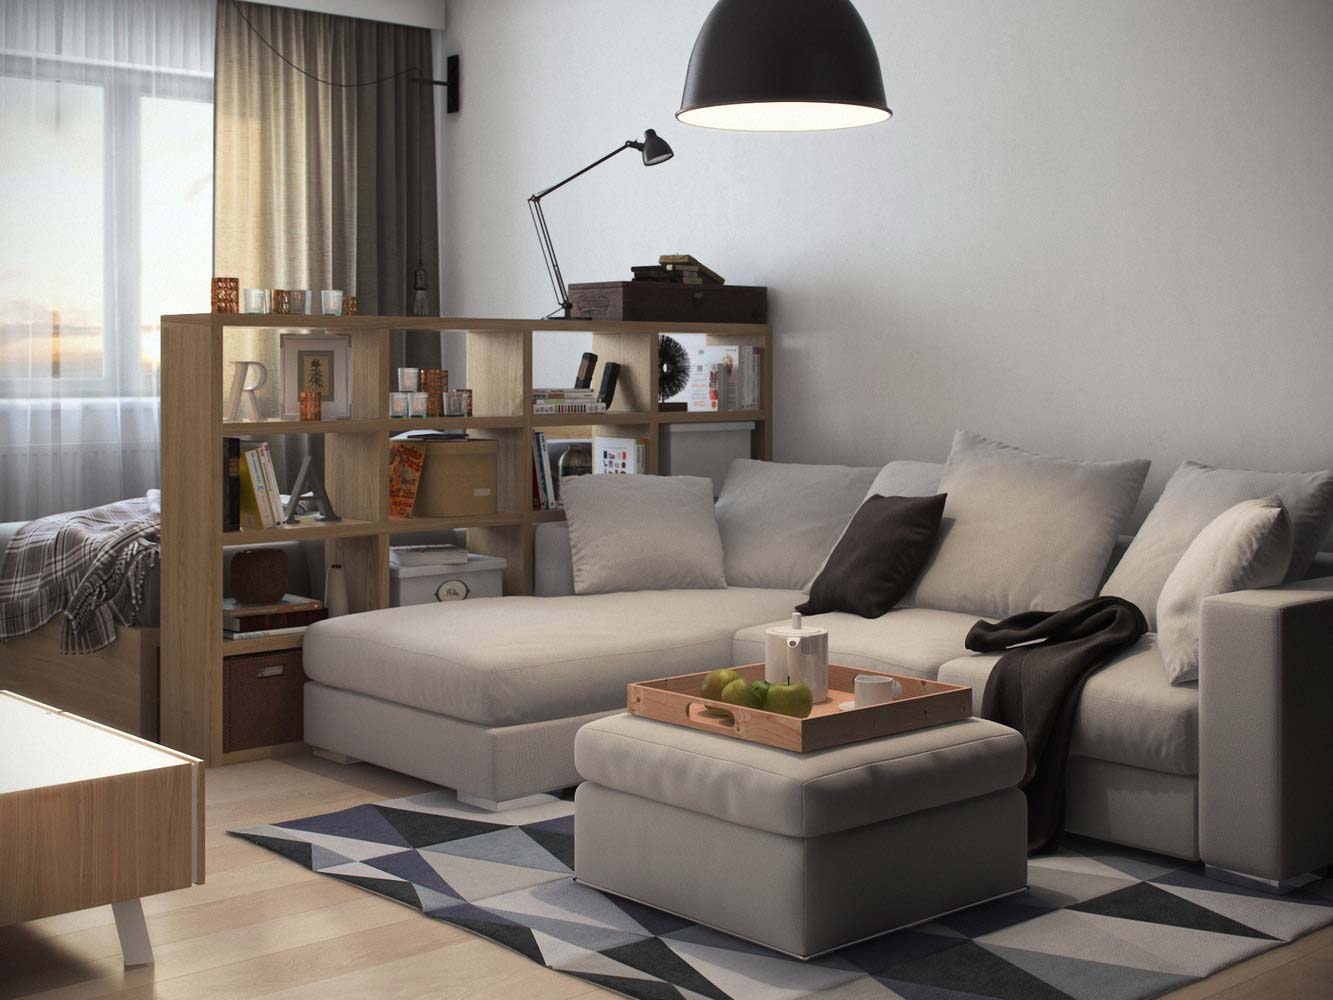 Как оформить и обставить однокомнатную квартиру: фото идей дизайна интерьера однокомнатной квартиры